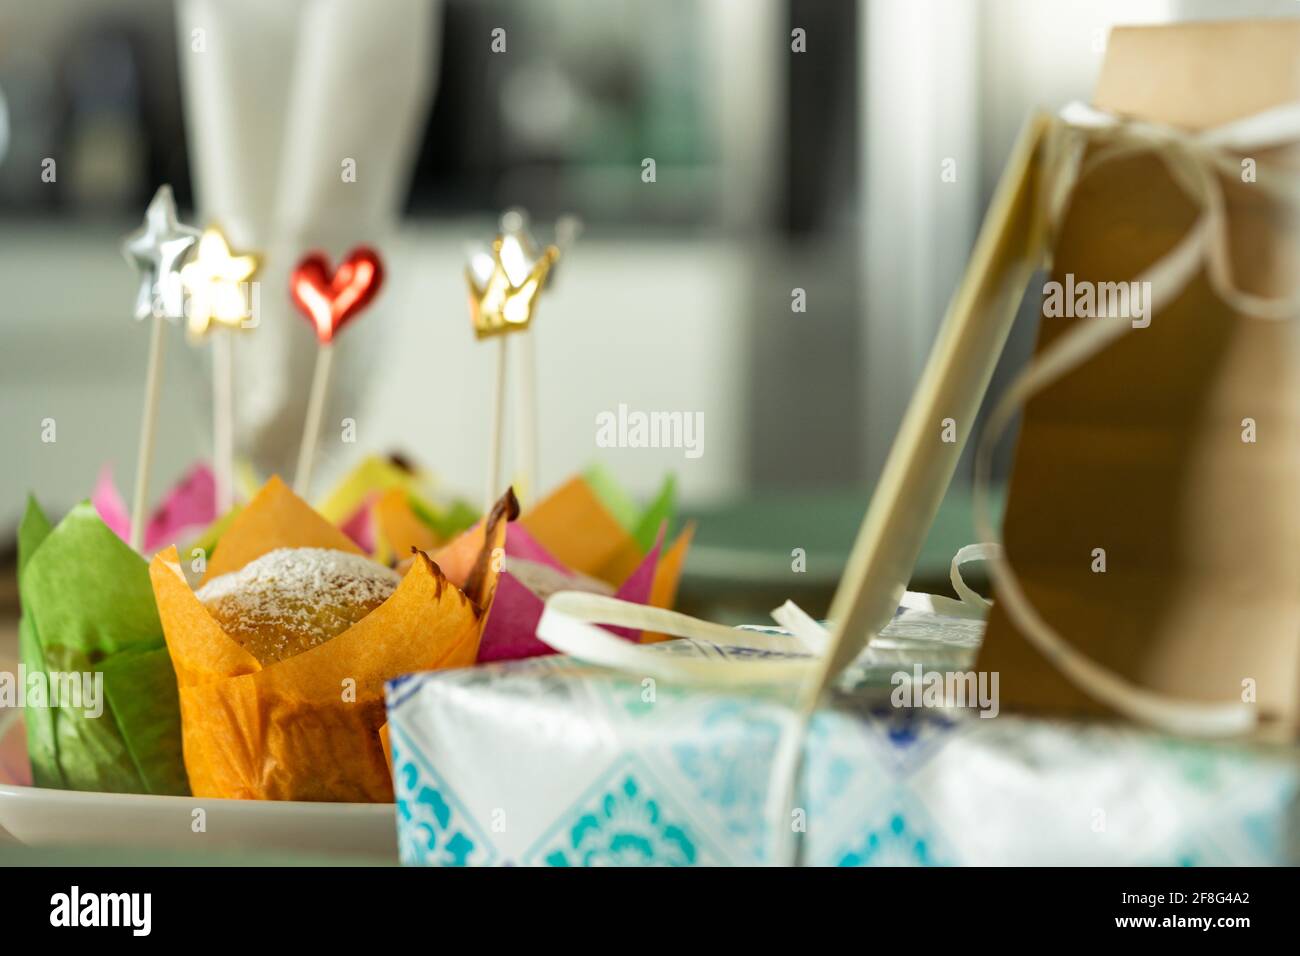 Amerikanische Muffins auf einem Esstisch, bereit für eine Geburtstagsfeier Stockfoto